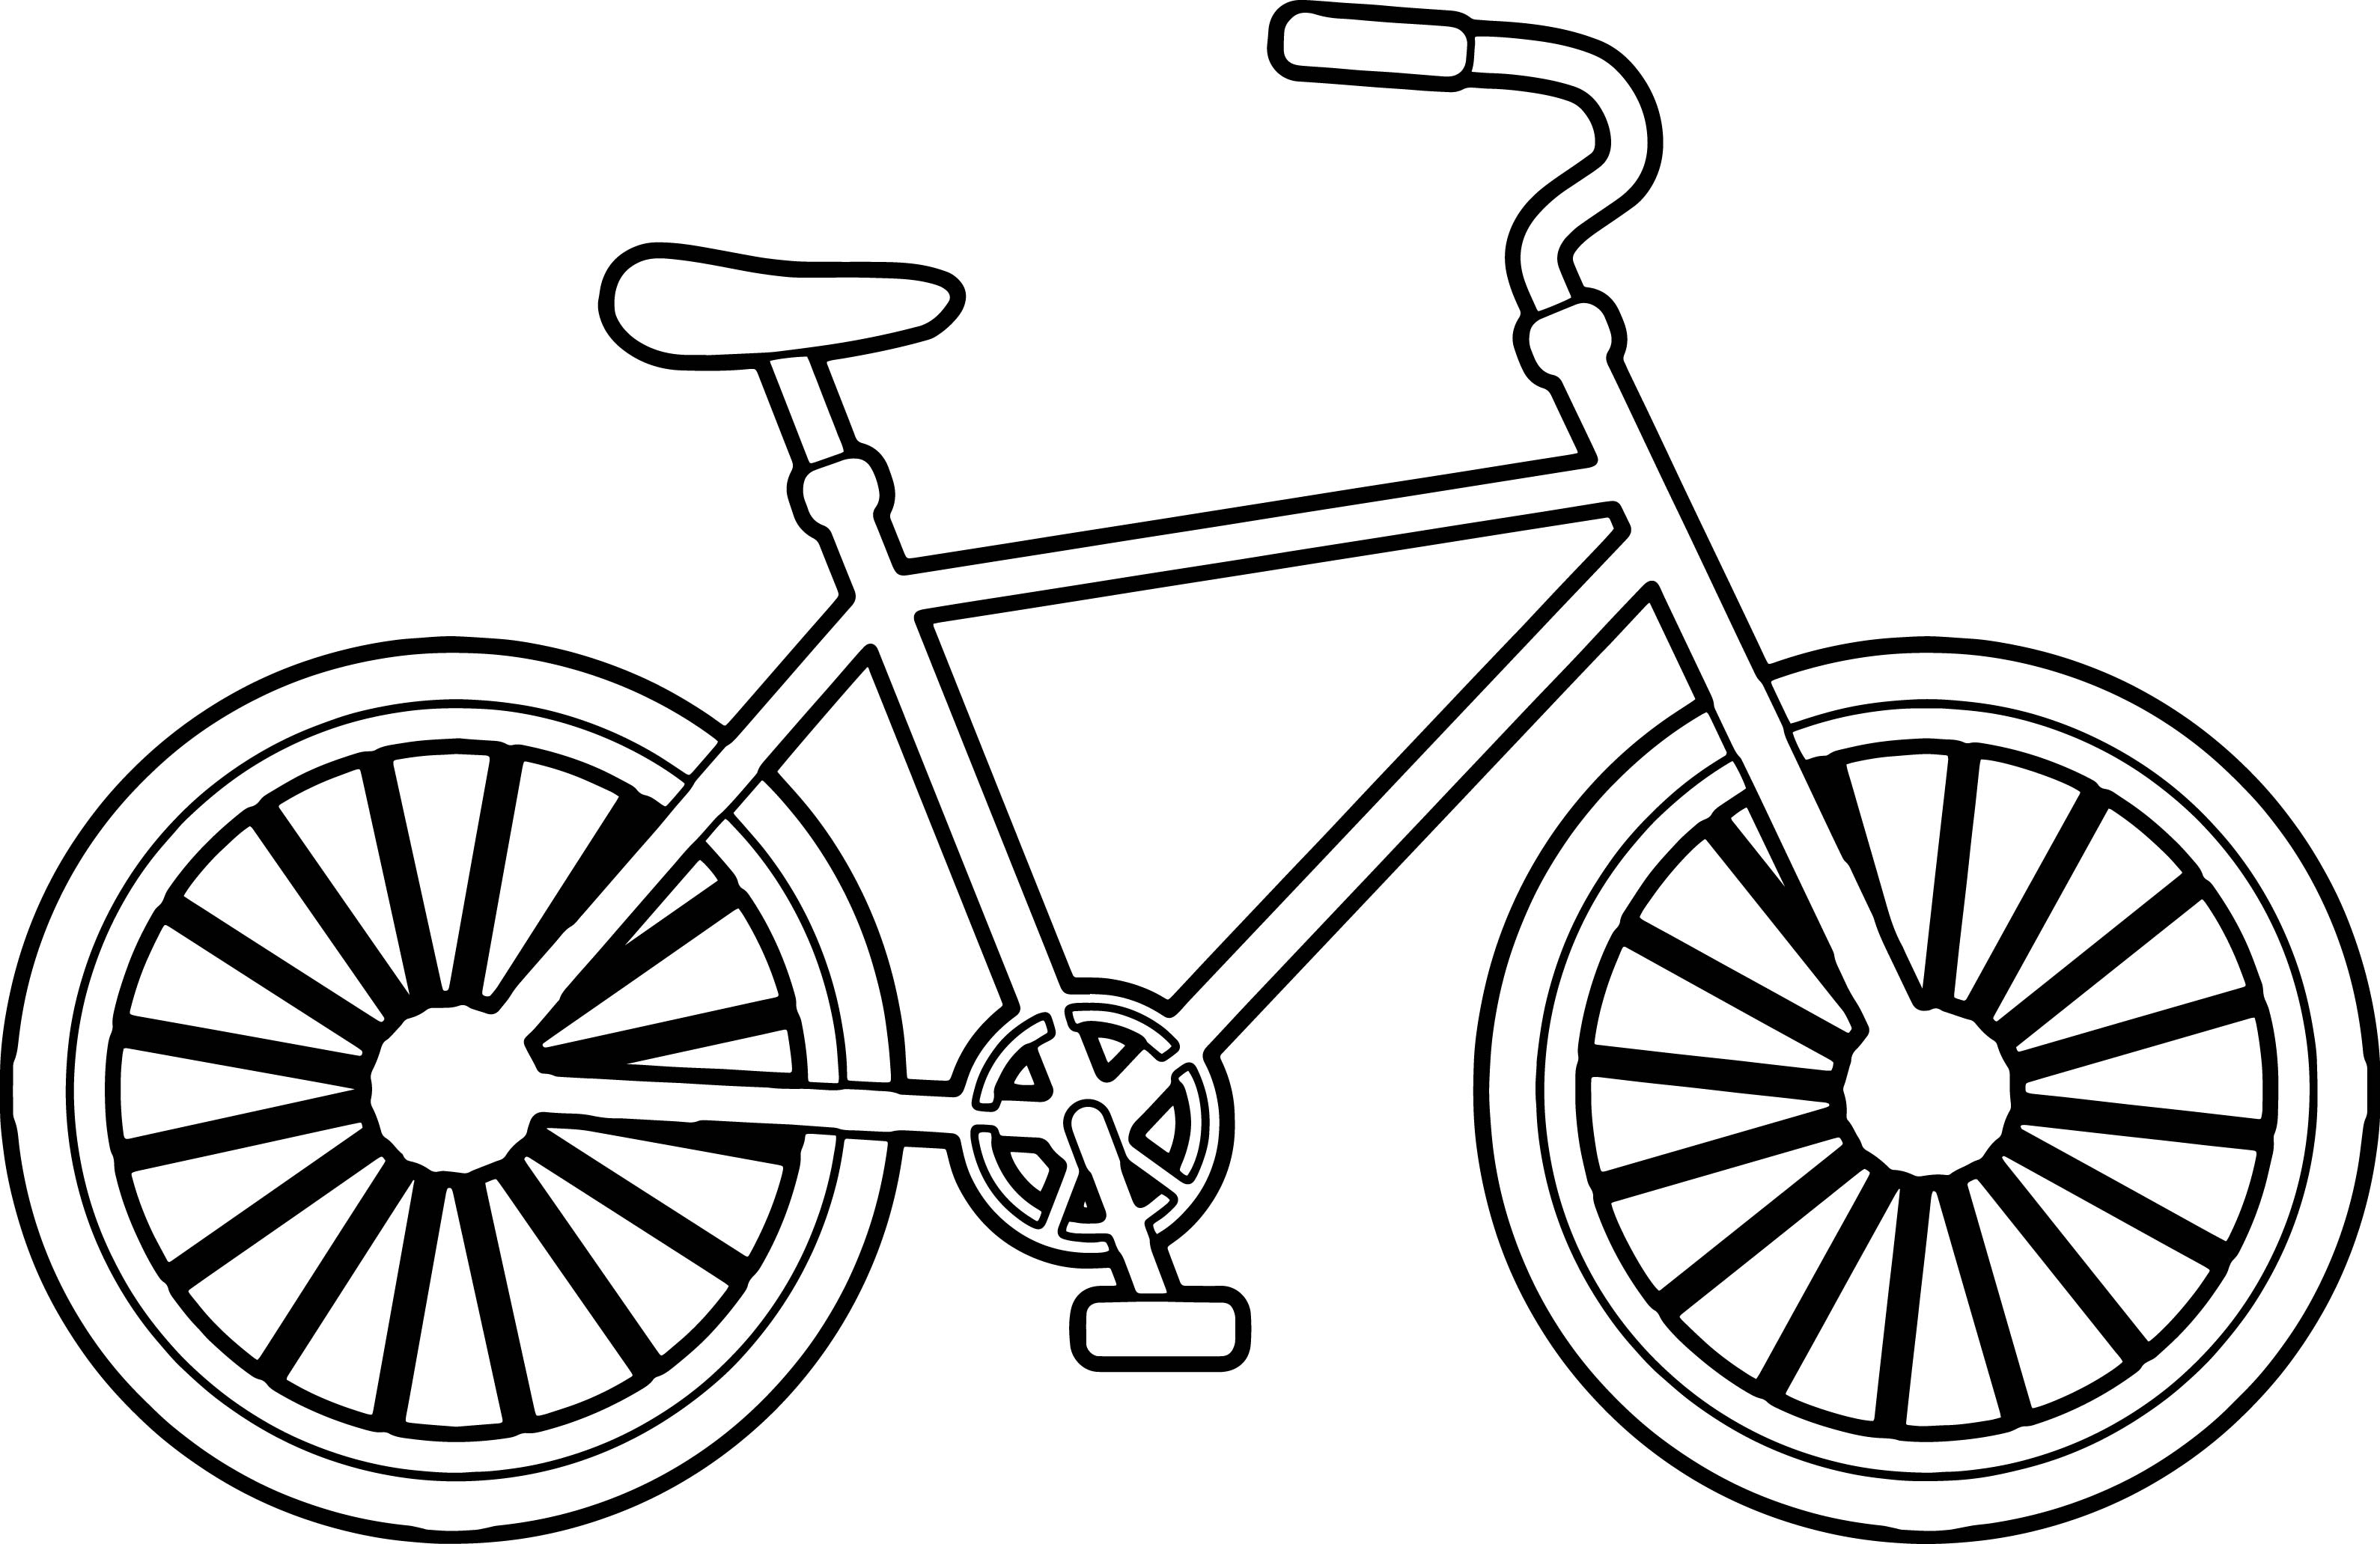 Hình ảnh vẽ xe đạp: Chiêm ngưỡng những hình ảnh tuyệt đẹp về xe đạp được vẽ bằng tay với đầy tâm huyết và sáng tạo. Những chi tiết nhỏ như chiếc cốc nước hay chiếc giỏ đựng đồ trên xe đều được vẽ cực kỳ chân thật và tinh xảo. Đam mê về xe đạp và nghệ thuật sẽ chắc chắn được đáp ứng trong những bức vẽ này.